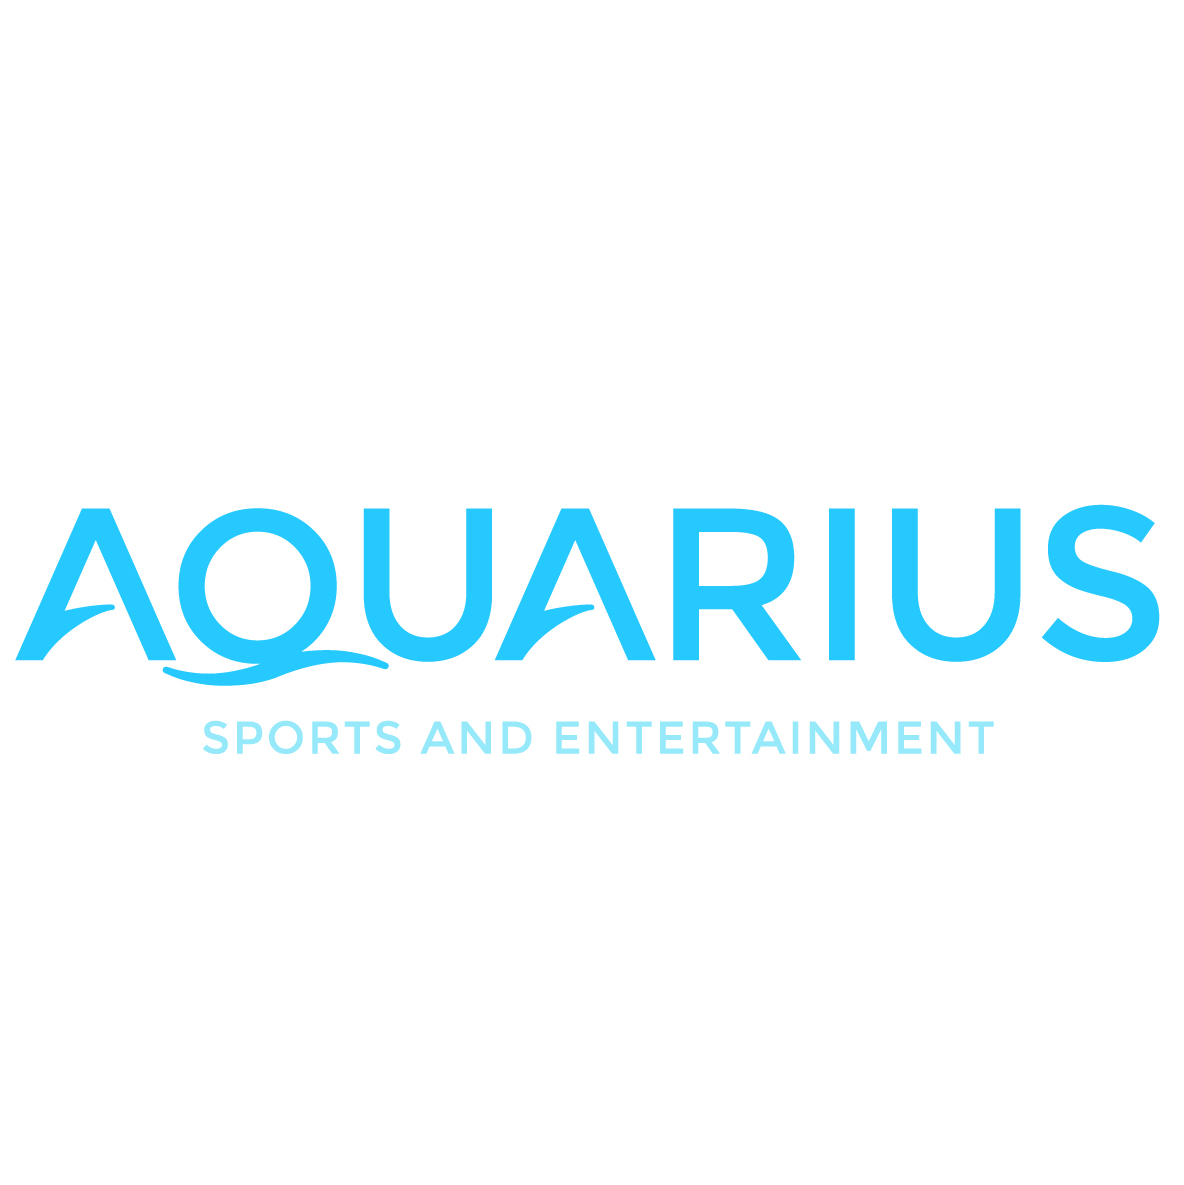 Aquarius-sports-and-entertainment